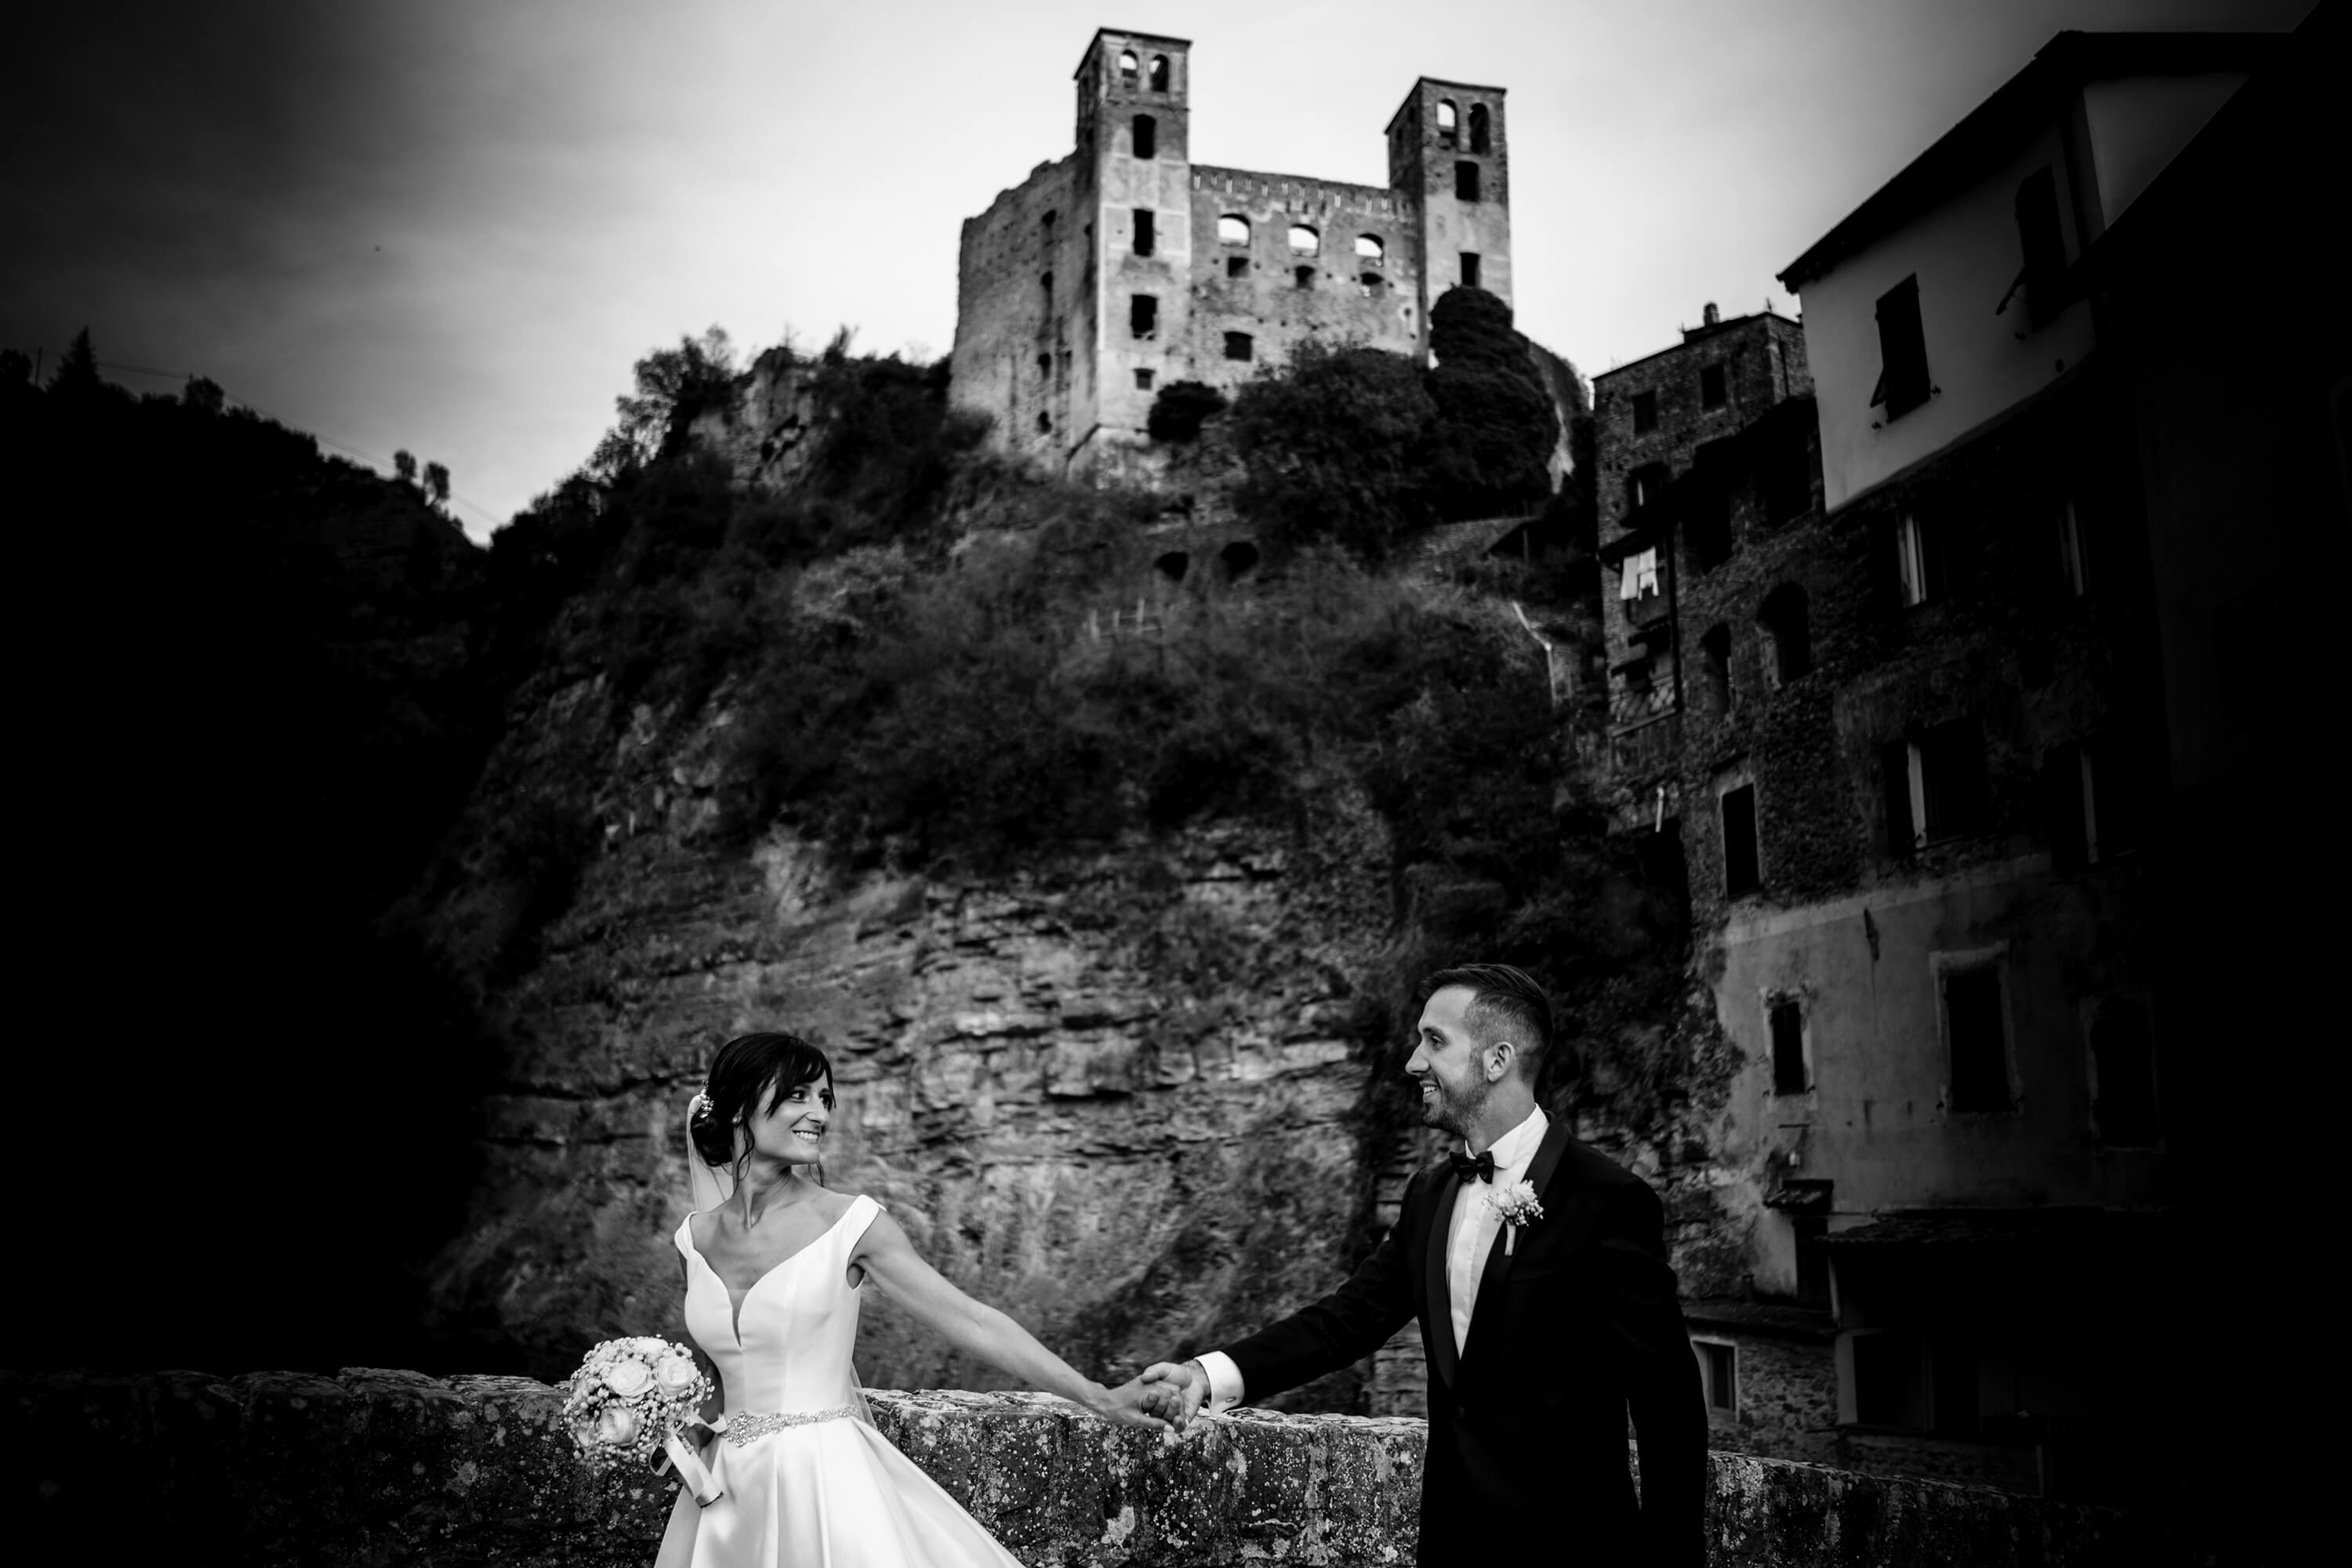 foto di matrimonio realizzata sul ponte davanti al castello di dolceacqua